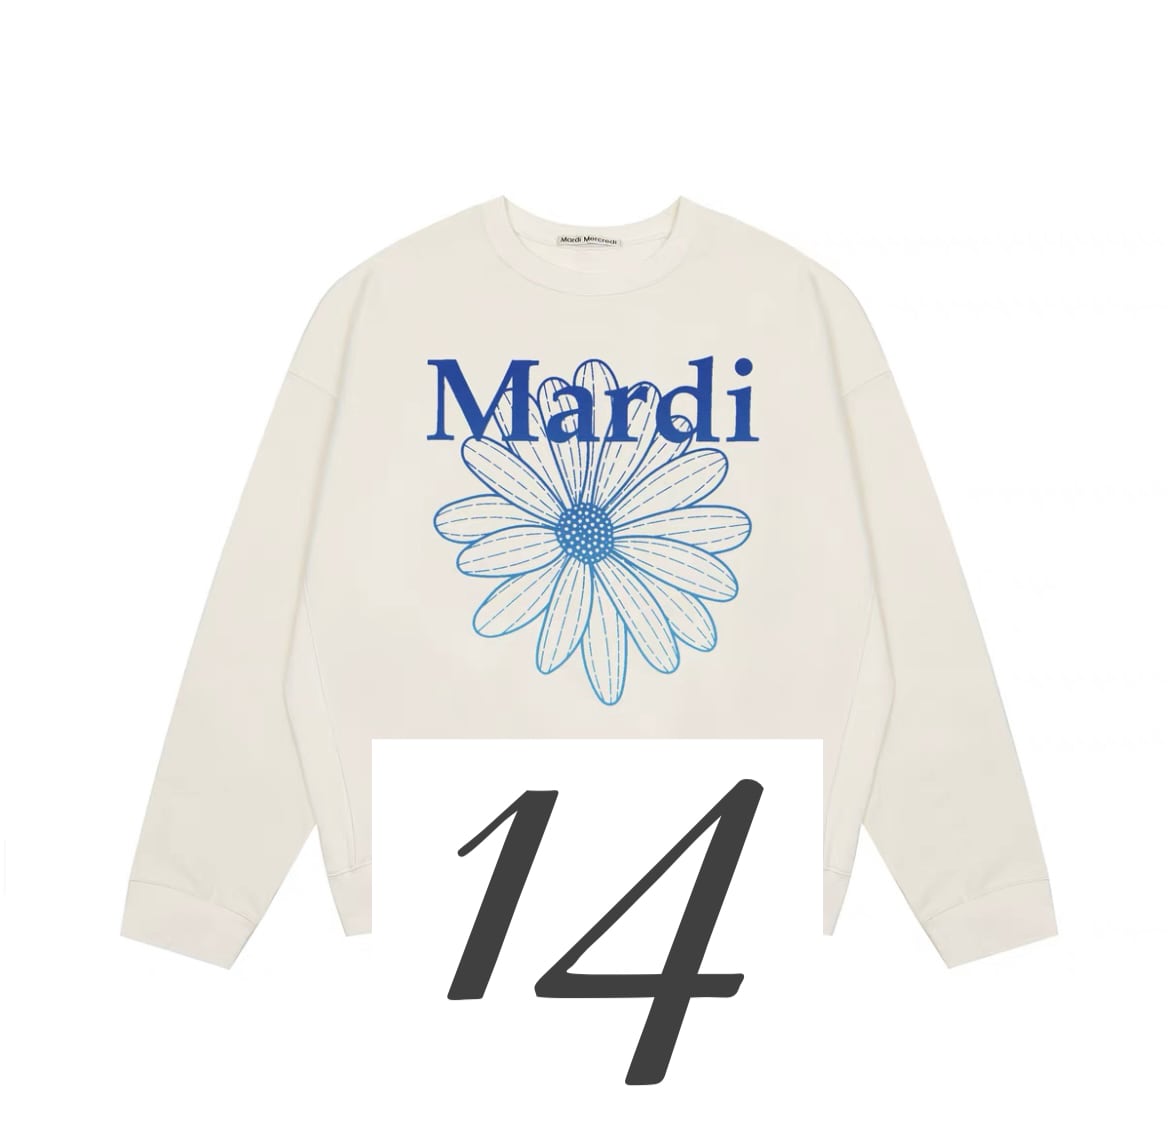 受注】Mardi Mercredi (マルディメクルディ) SWEATSHIRT FLOWERMARDI ...